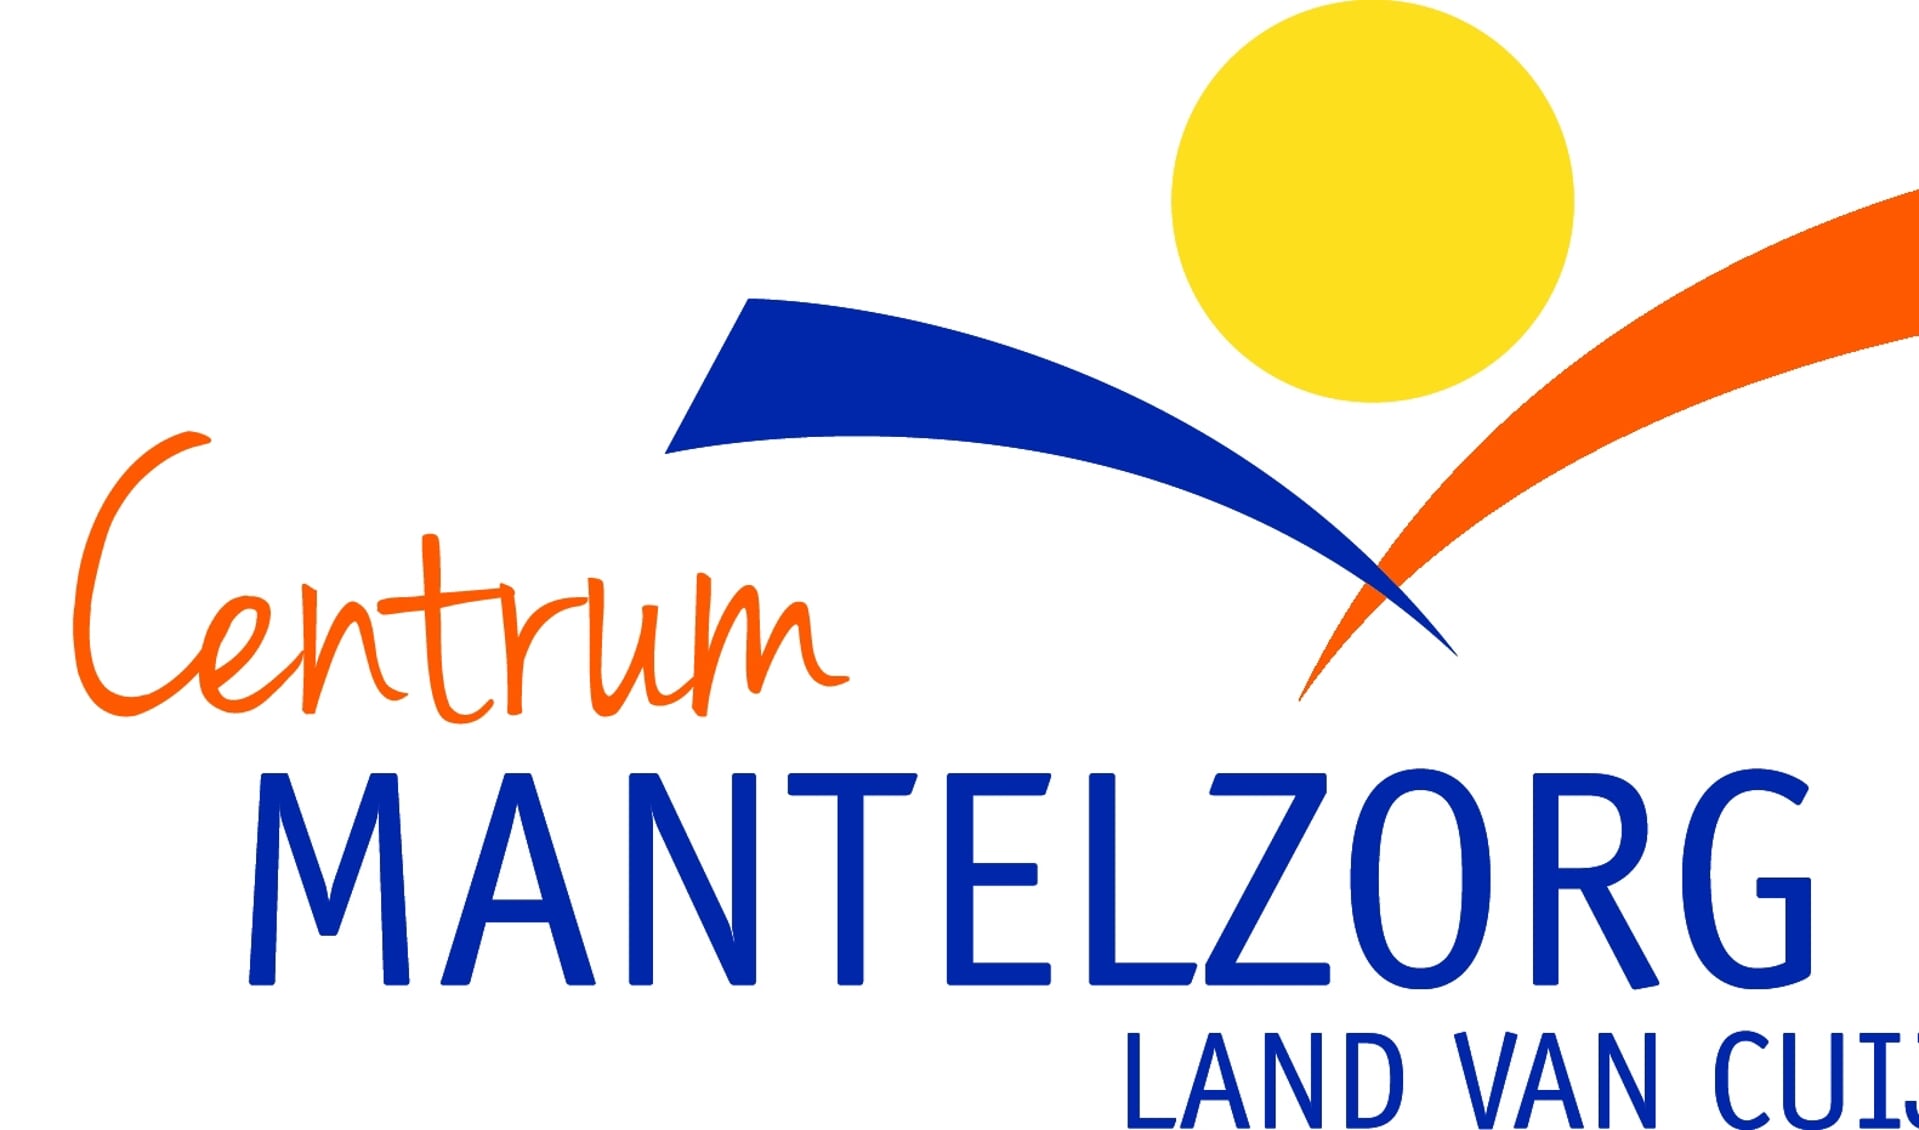 Centrum Mantelzorg Land van Cuijk organiseert een online informatiebijeenkomst voor mantelzorgers